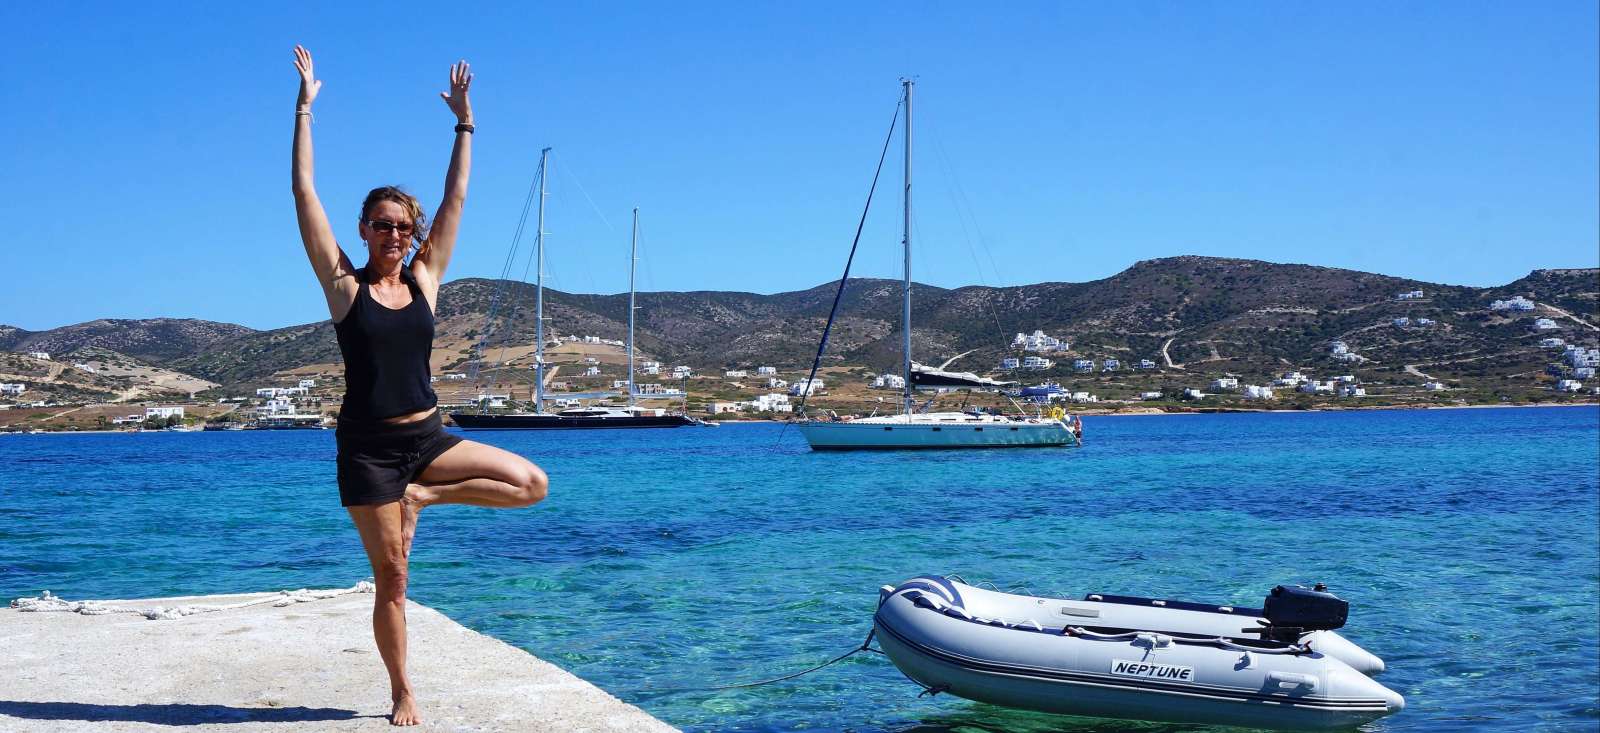 Voyage sur l'eau : Yoga et voile active dans les Cyclades